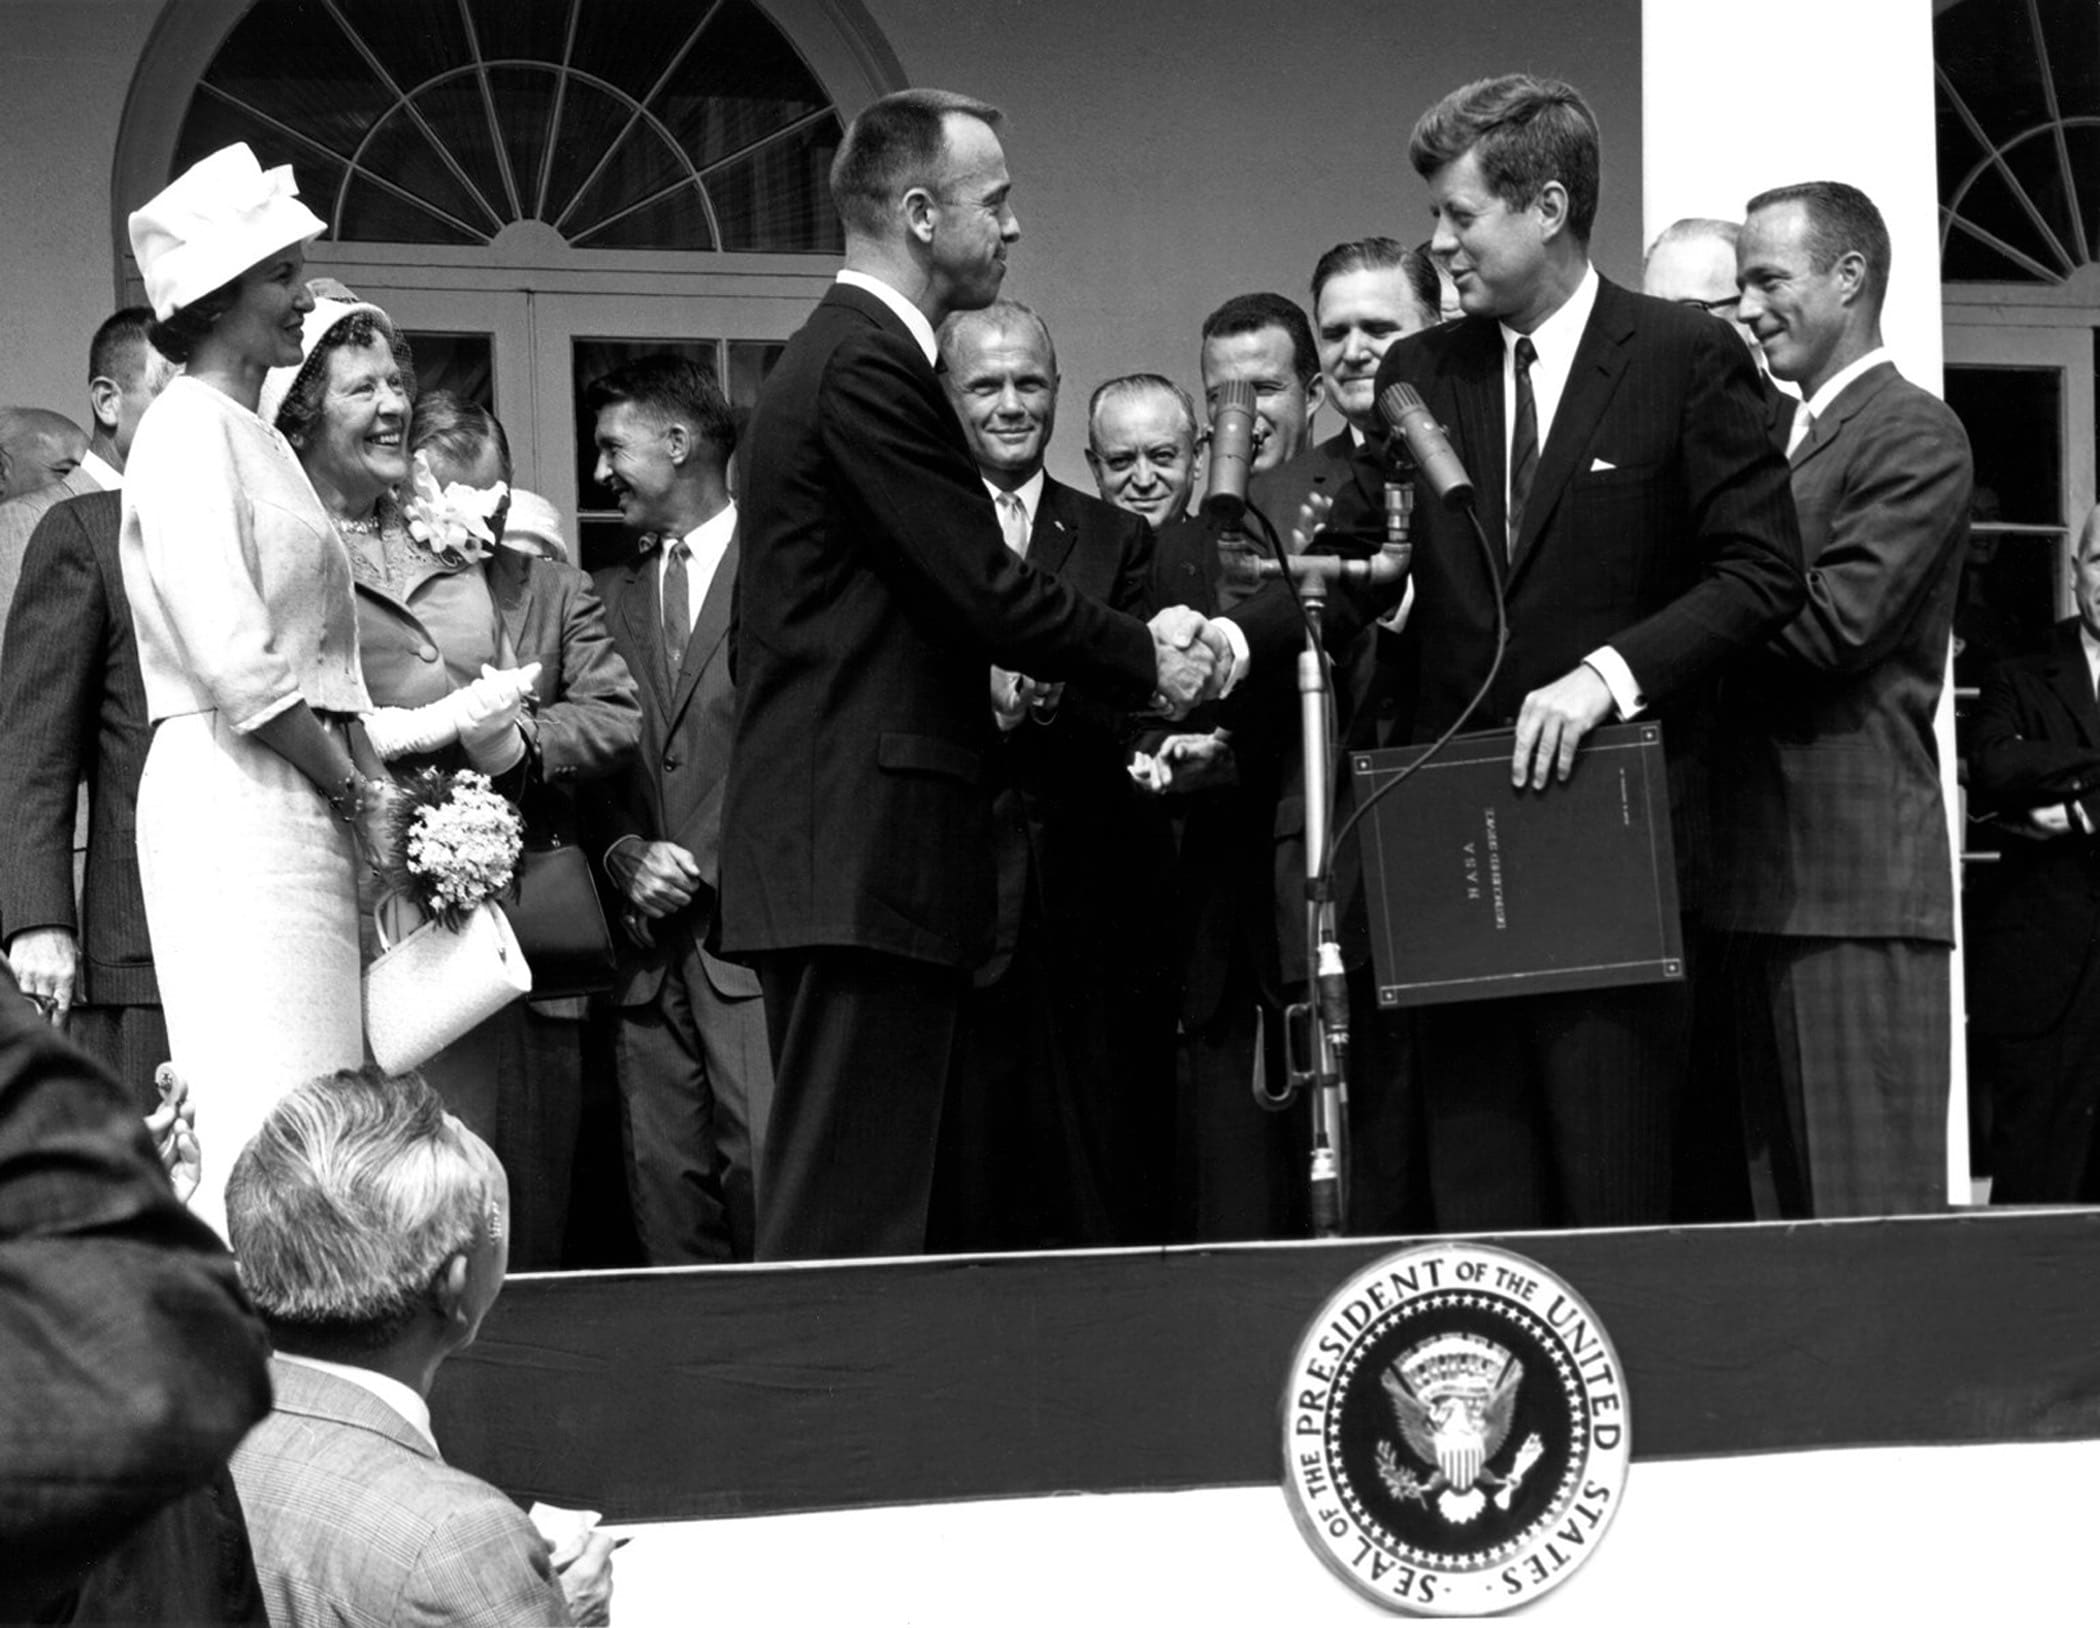 Il Presidente John F. Kennedy in questa occasione mentre premia l’astronauta John Glenn. Sarà lui ad avviare il progetto Apollo nel 1962, lanciando la sfida per portare l’uomo sulla luna